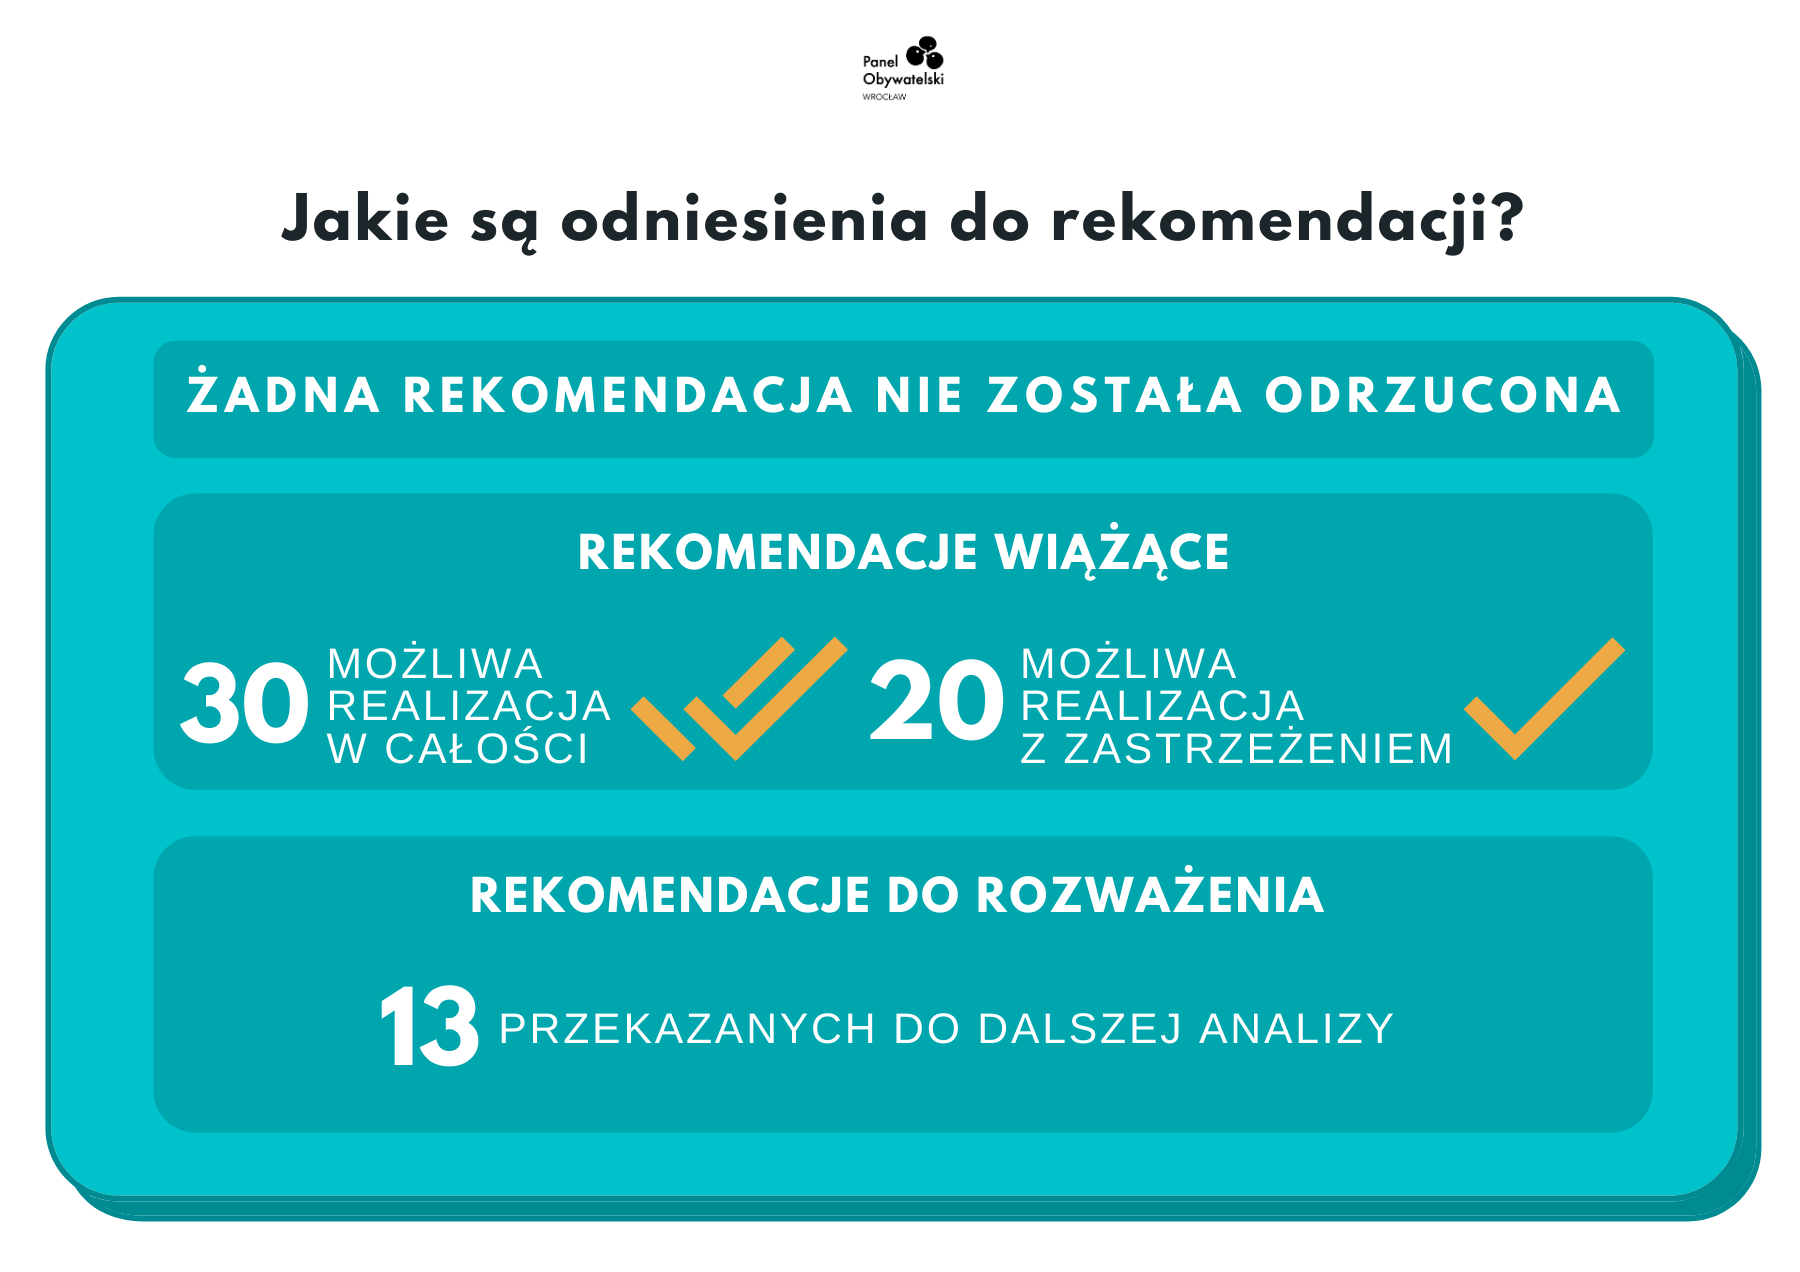 odniesienia do rekomendacji Panelu Obywatelskiego, infografika